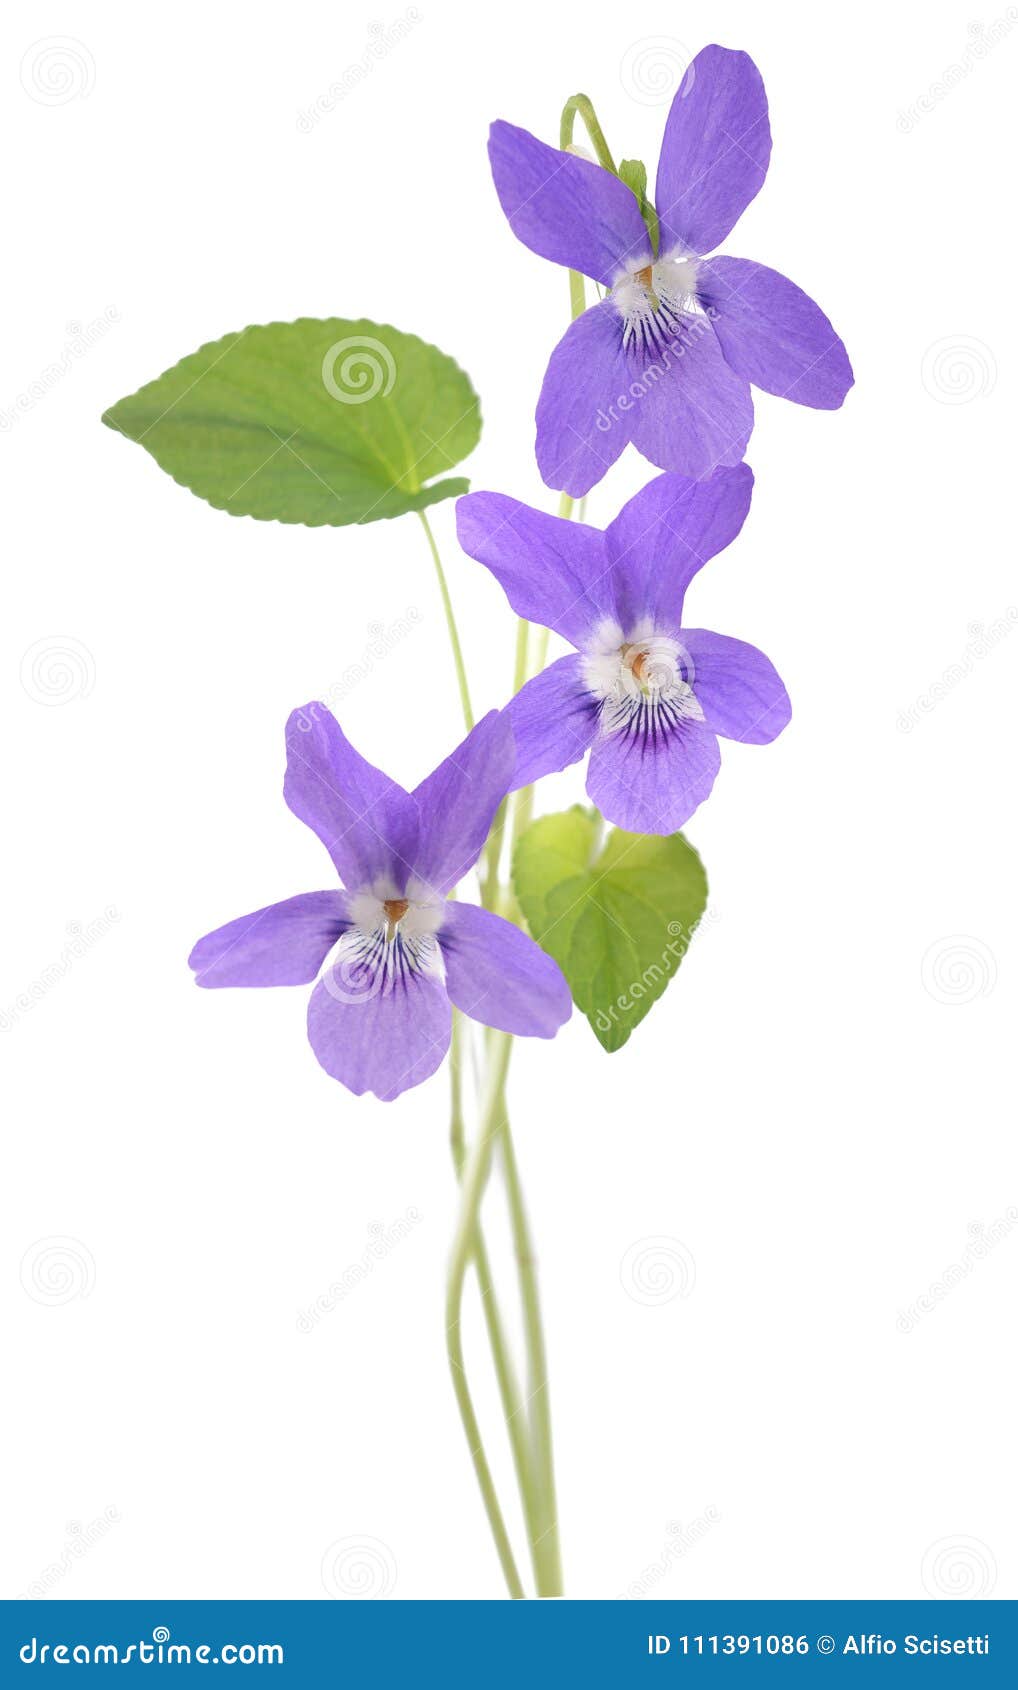 common violet plant